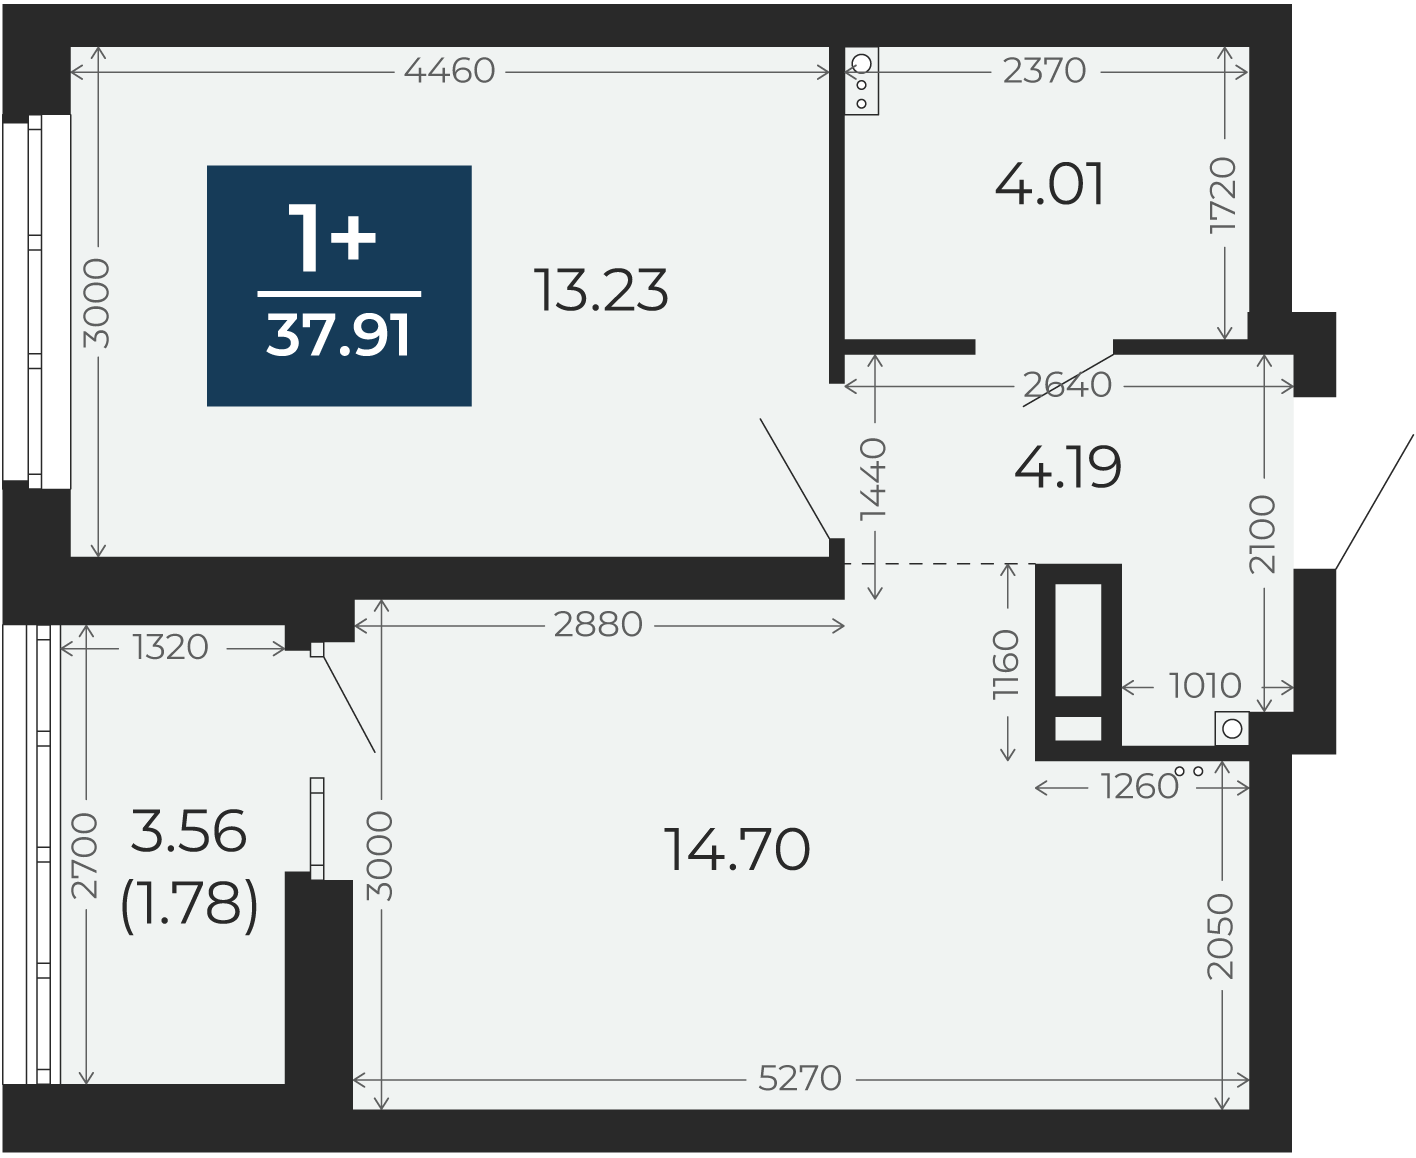 Квартира № 53, 1-комнатная, 37.91 кв. м, 2 этаж